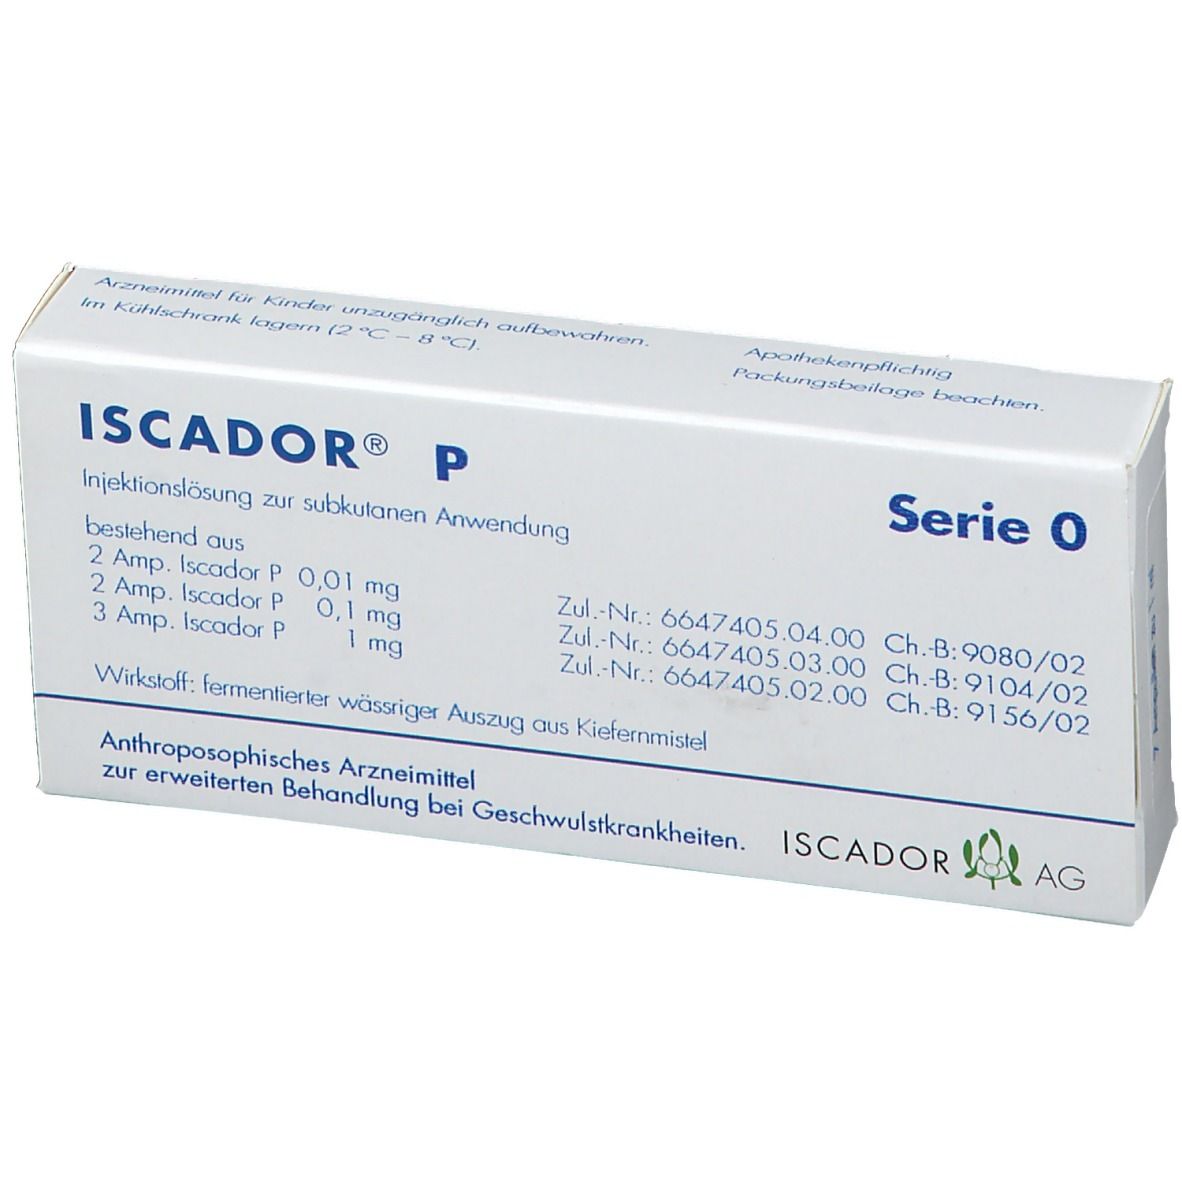 ISCADOR® P Serie 0